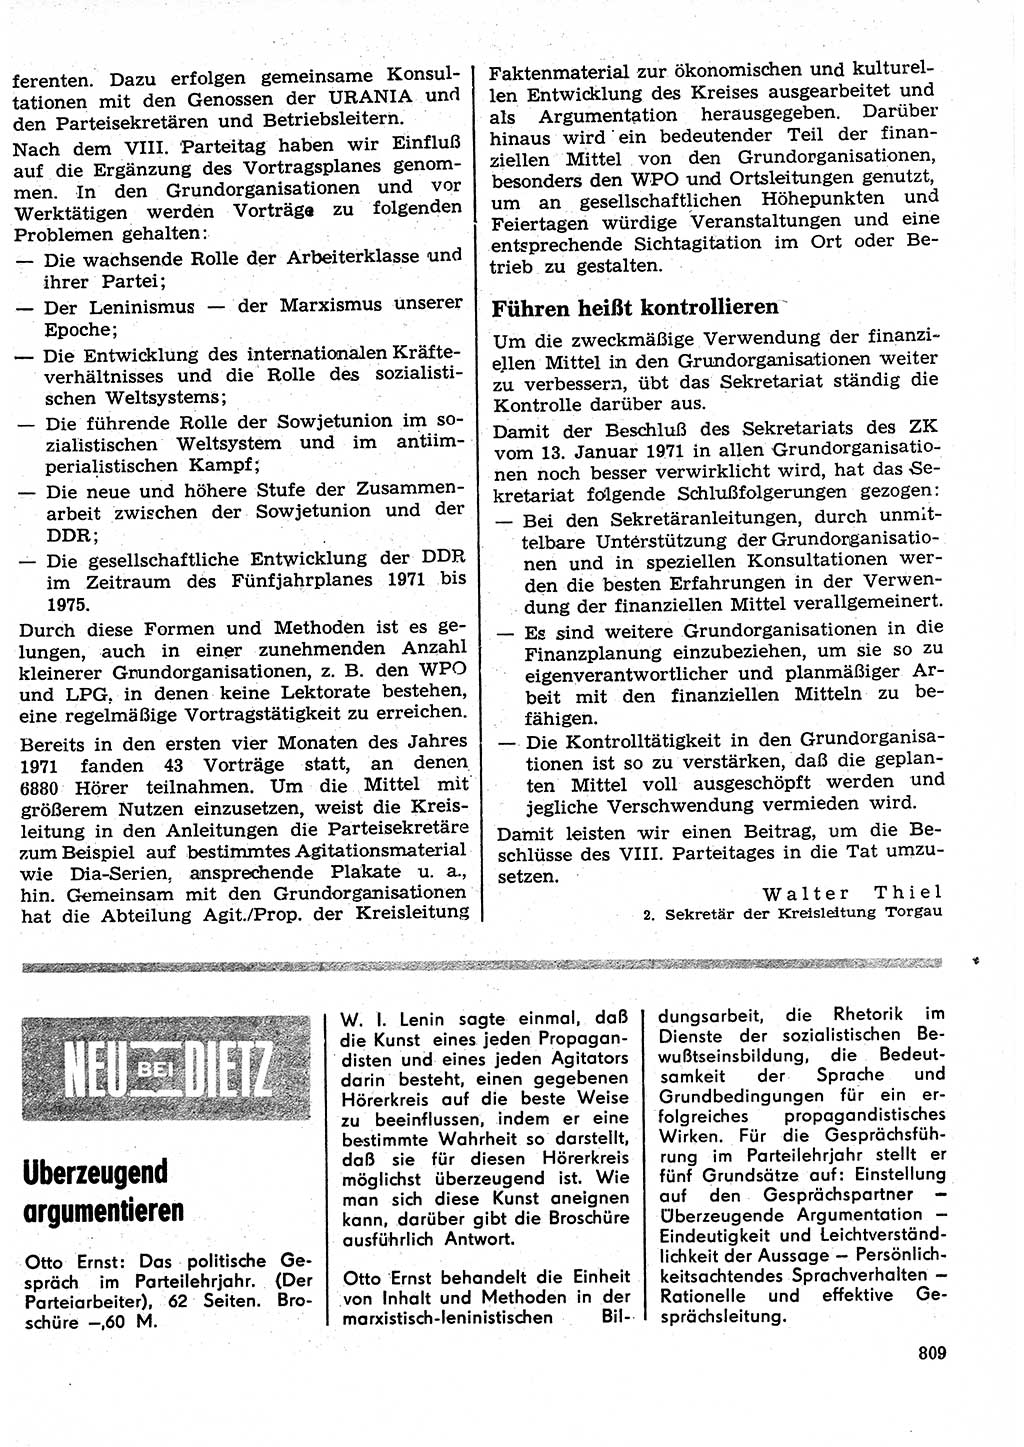 Neuer Weg (NW), Organ des Zentralkomitees (ZK) der SED (Sozialistische Einheitspartei Deutschlands) für Fragen des Parteilebens, 26. Jahrgang [Deutsche Demokratische Republik (DDR)] 1971, Seite 809 (NW ZK SED DDR 1971, S. 809)